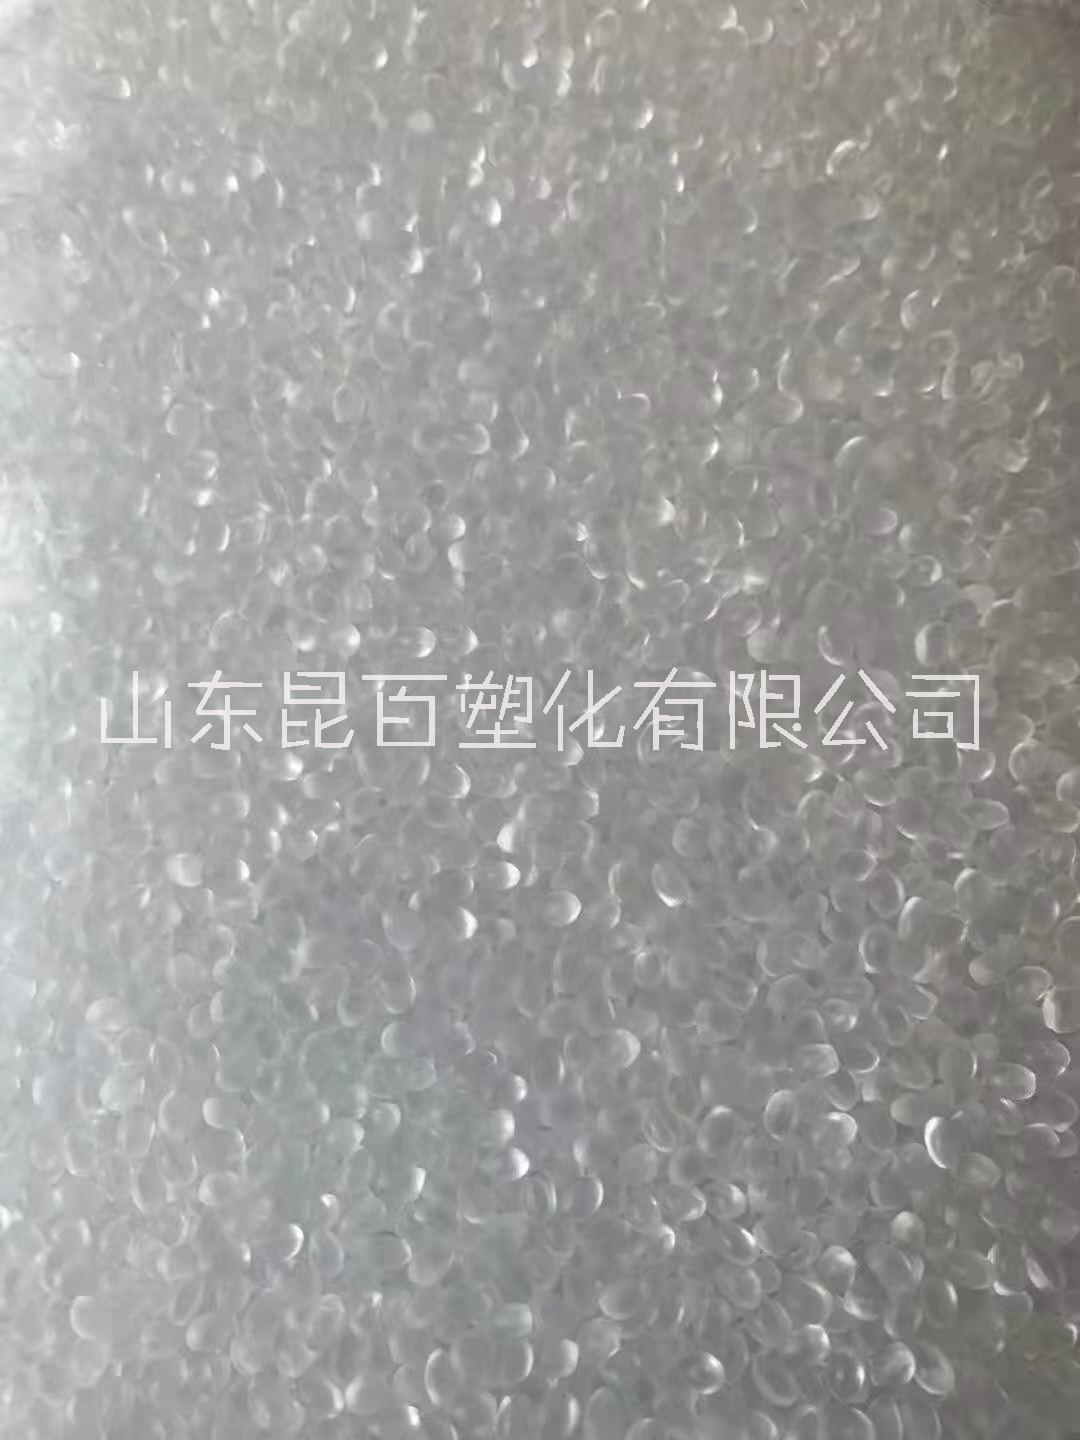 EVA 三井聚合 40W 光学级 热熔级 油墨级 薄壁制品 原料颗粒